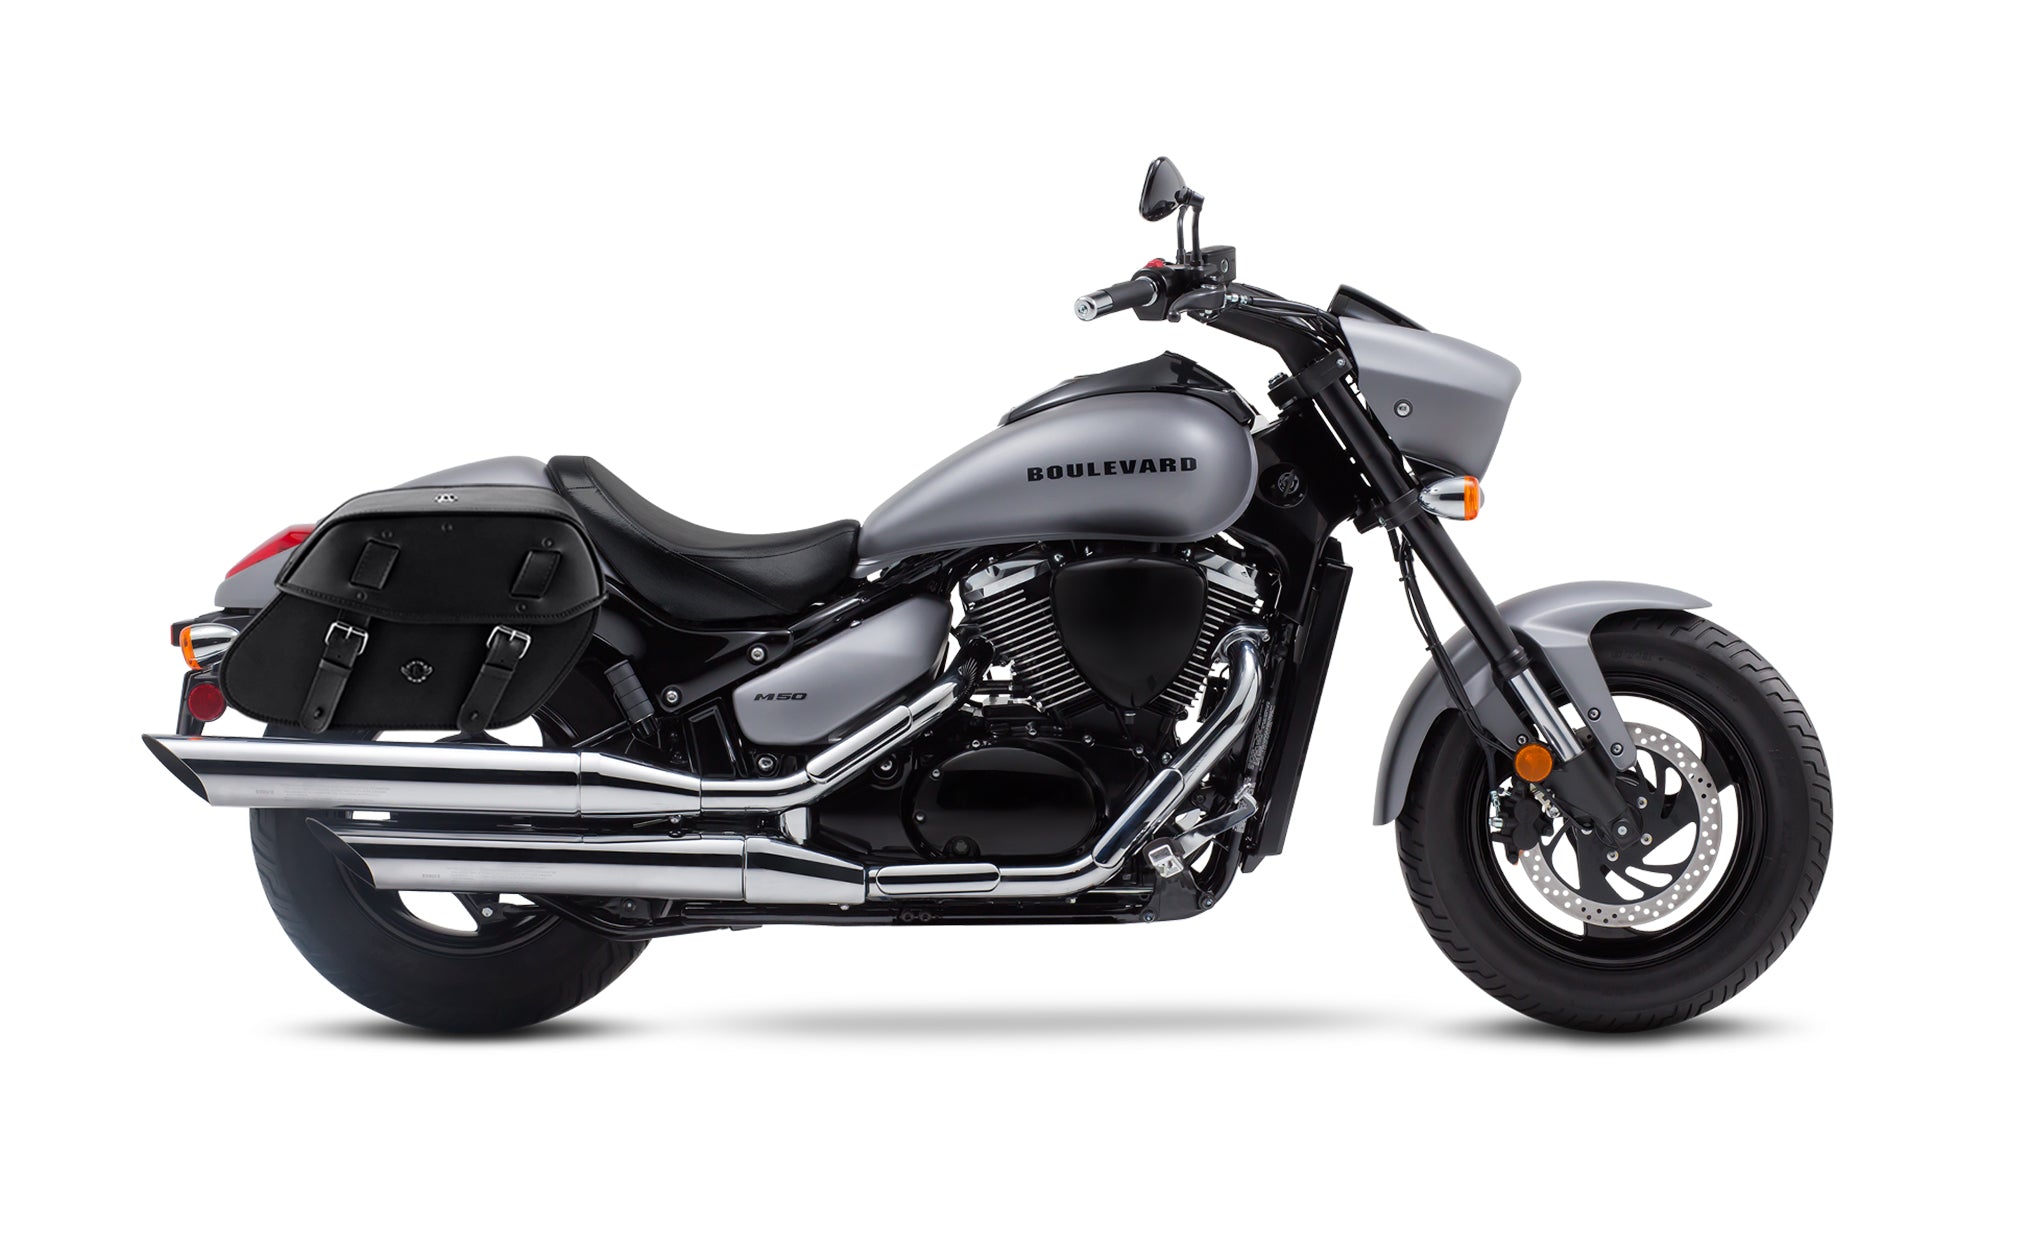 Viking Odin Large Suzuki Boulevard M50 Vz800 Leather Motorcycle Saddlebags on Bike Photo @expand